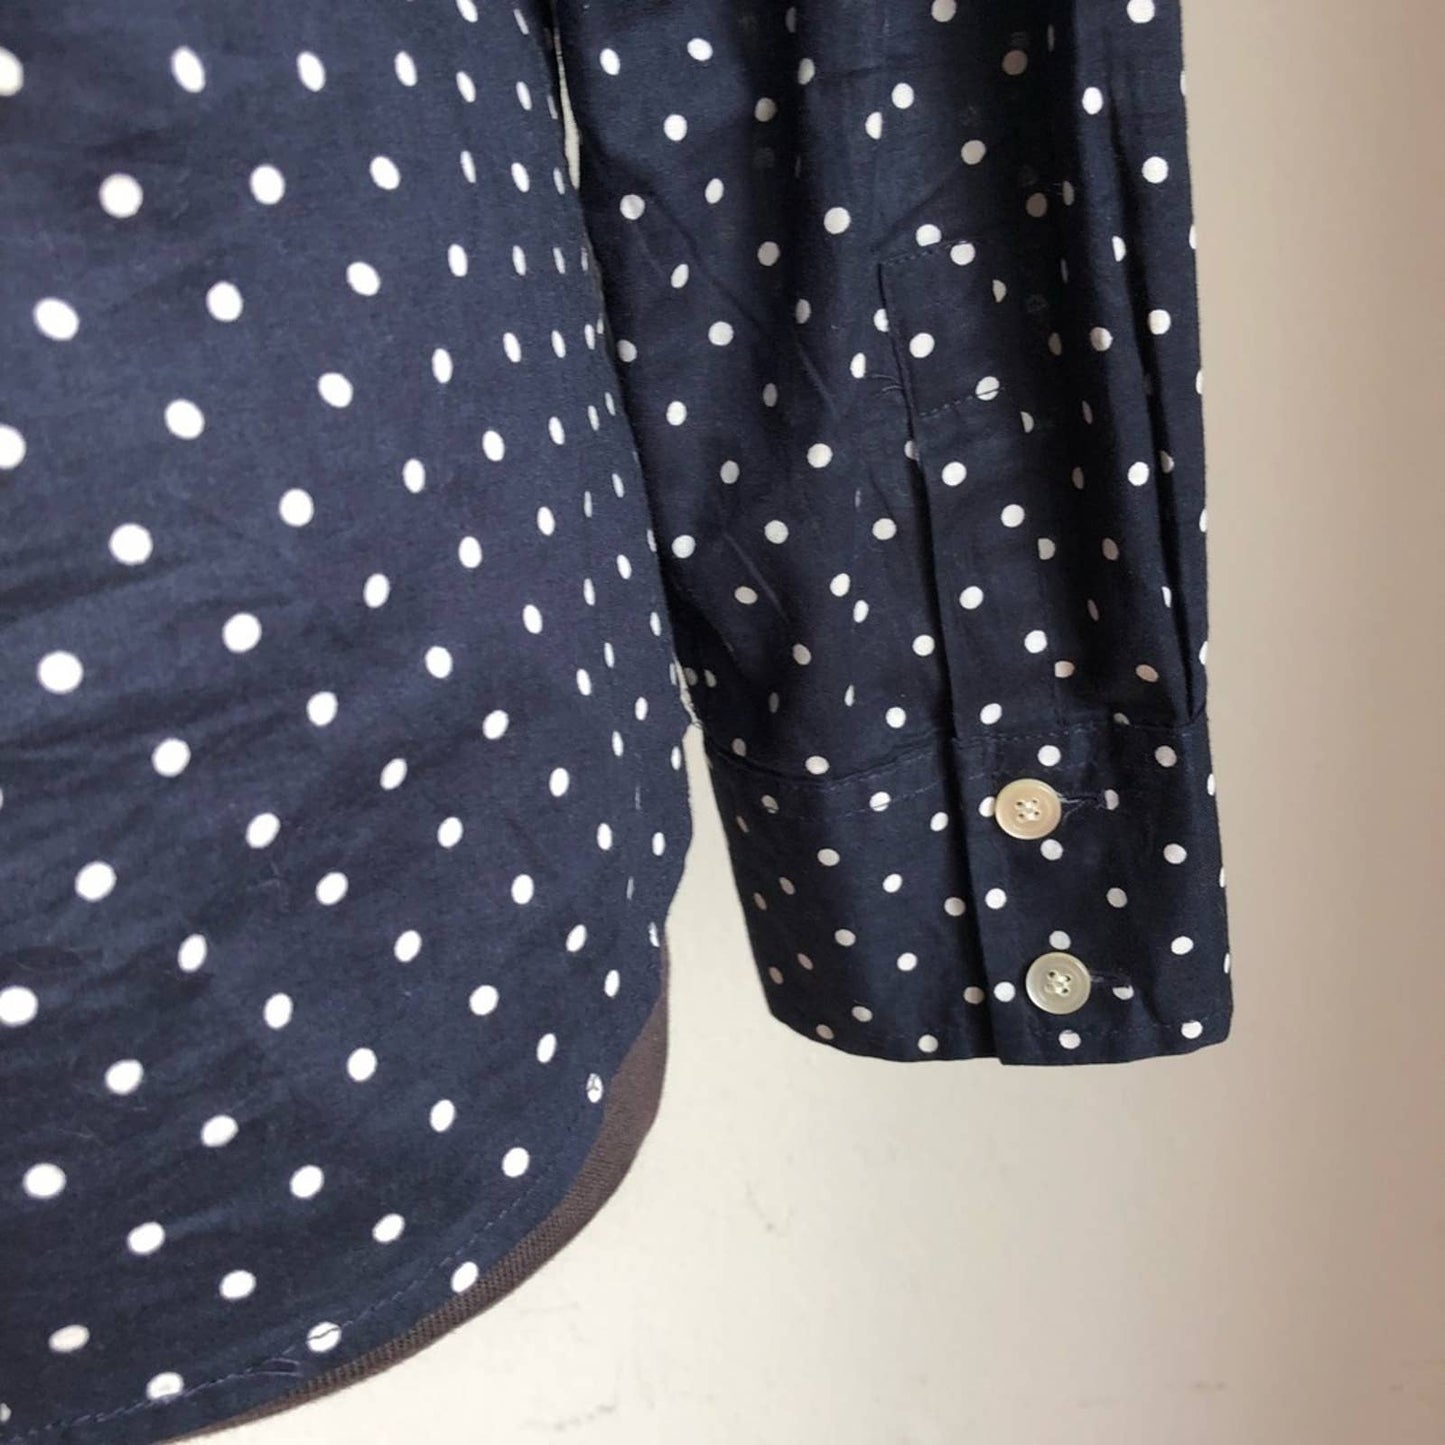 CHARTER Club sz 14 100% cotton polka dot blouse